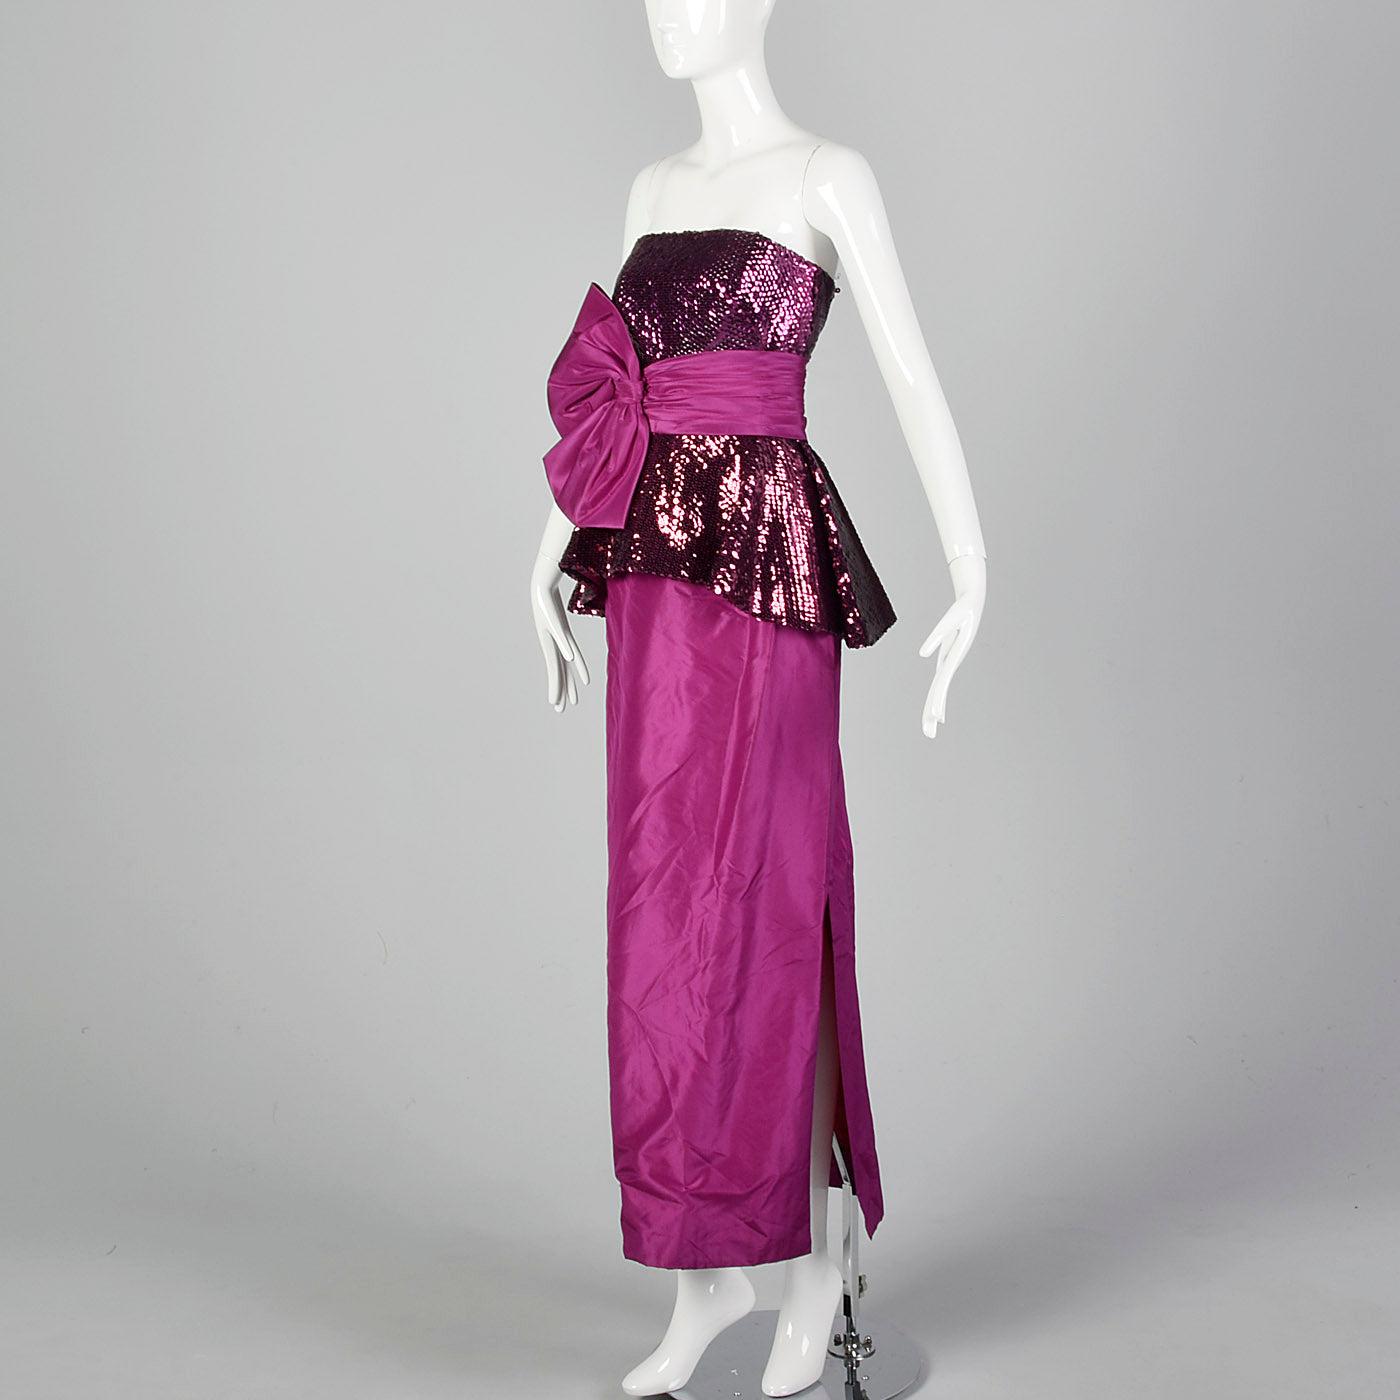 1980s Mignon Fuchsia Taffeta Dress with Sequined Bodice